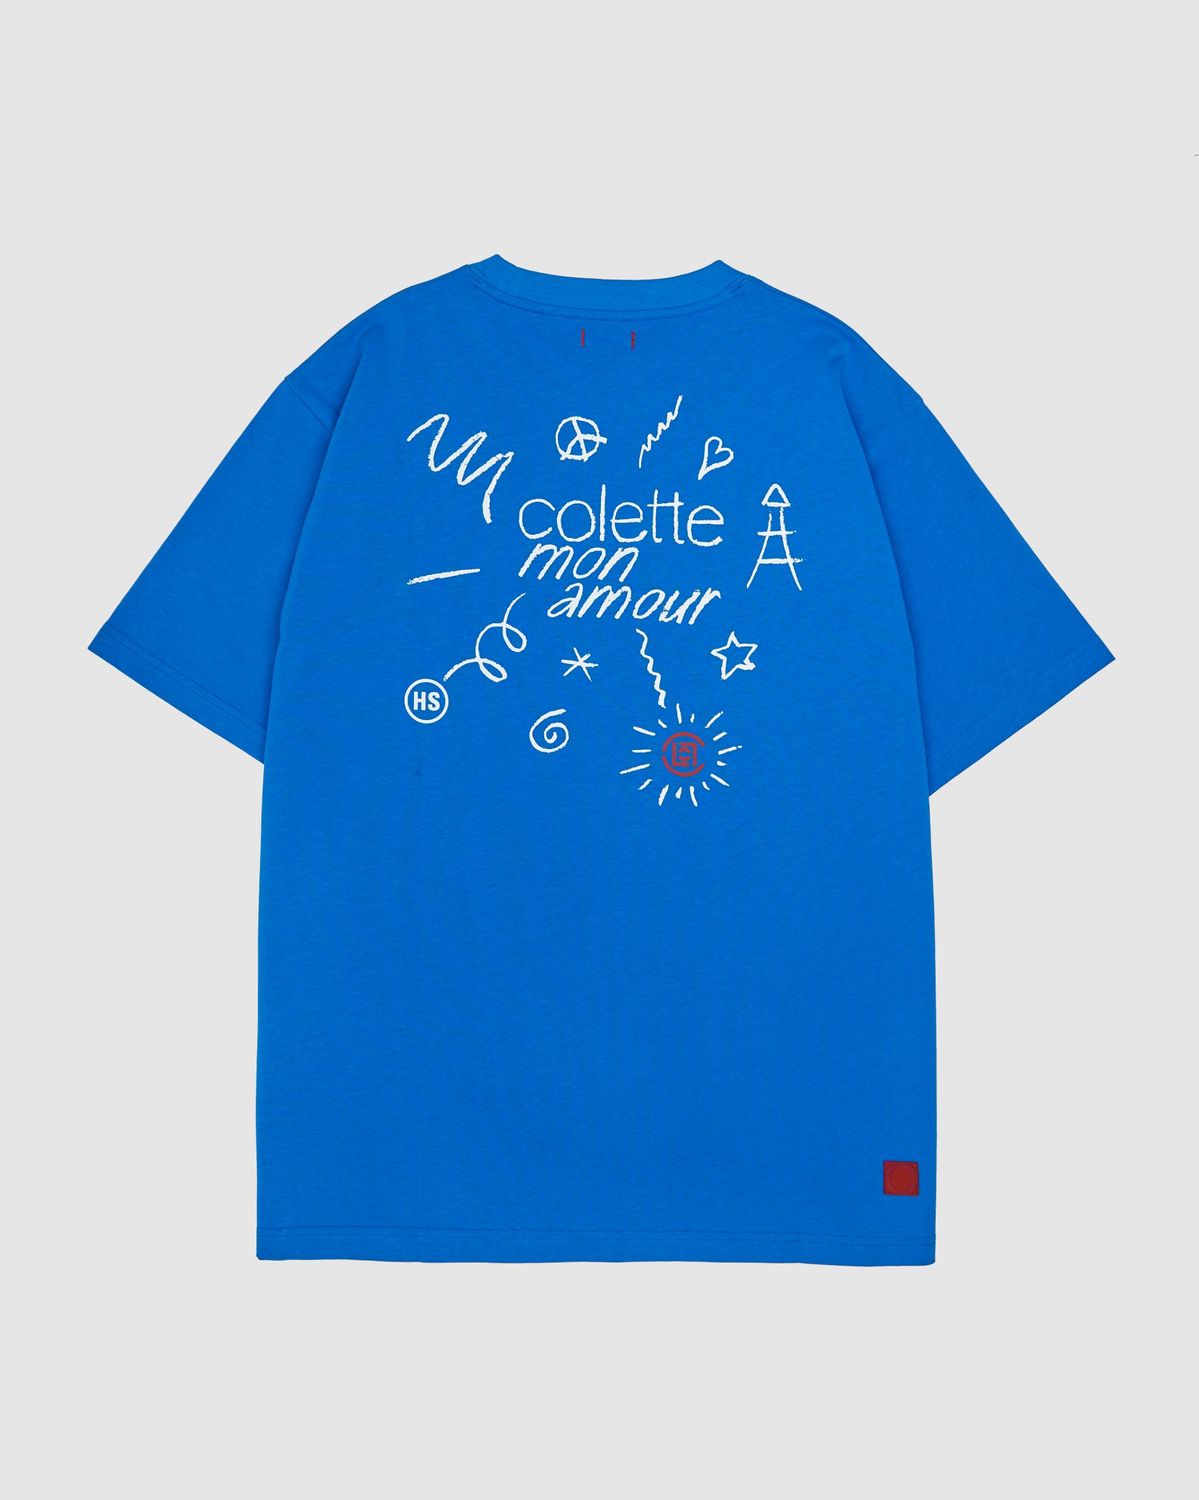 Colette Mon Amour – CLOT Blue T-Shirt - T-Shirts - Blue - Image 1